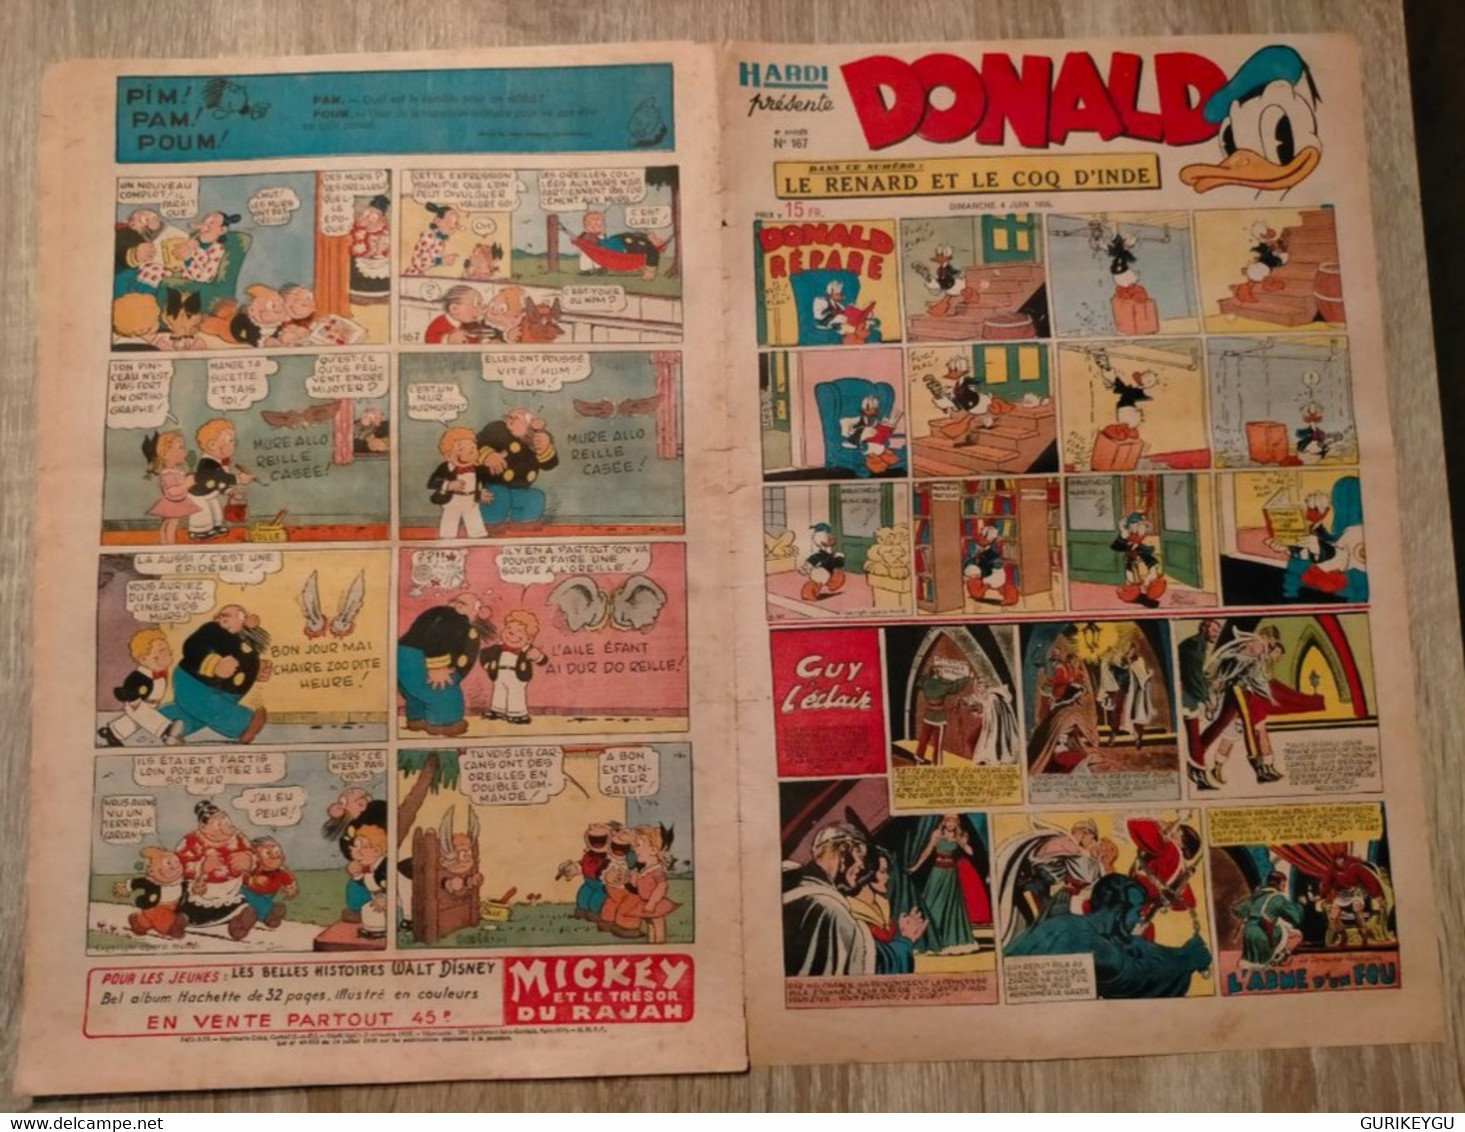 HARDI DONALD N° 167 MANDRAKE Tarzan Et La Cité De L'or E-R Burroughs LUC BRADEFER PIM PAM POUM 04/06/1950 Guy L'éclaire - Donald Duck